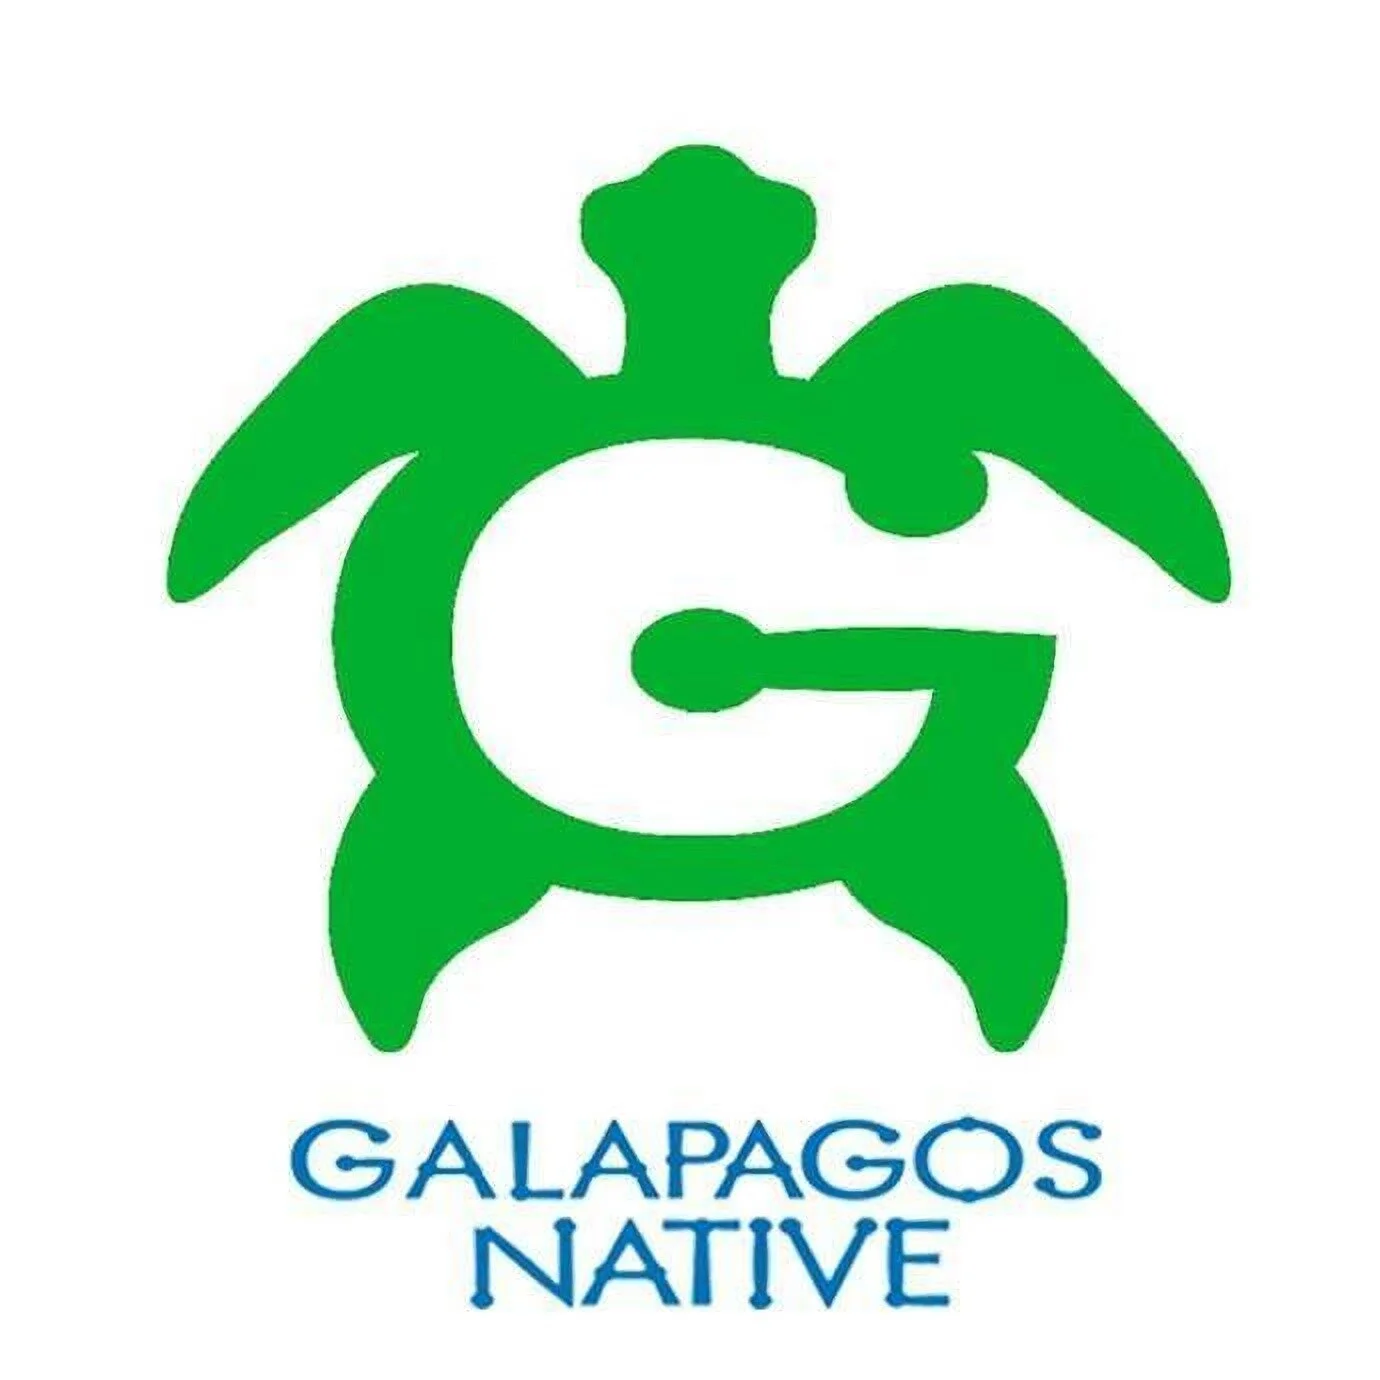 Hoteles-galapagos-native-13784